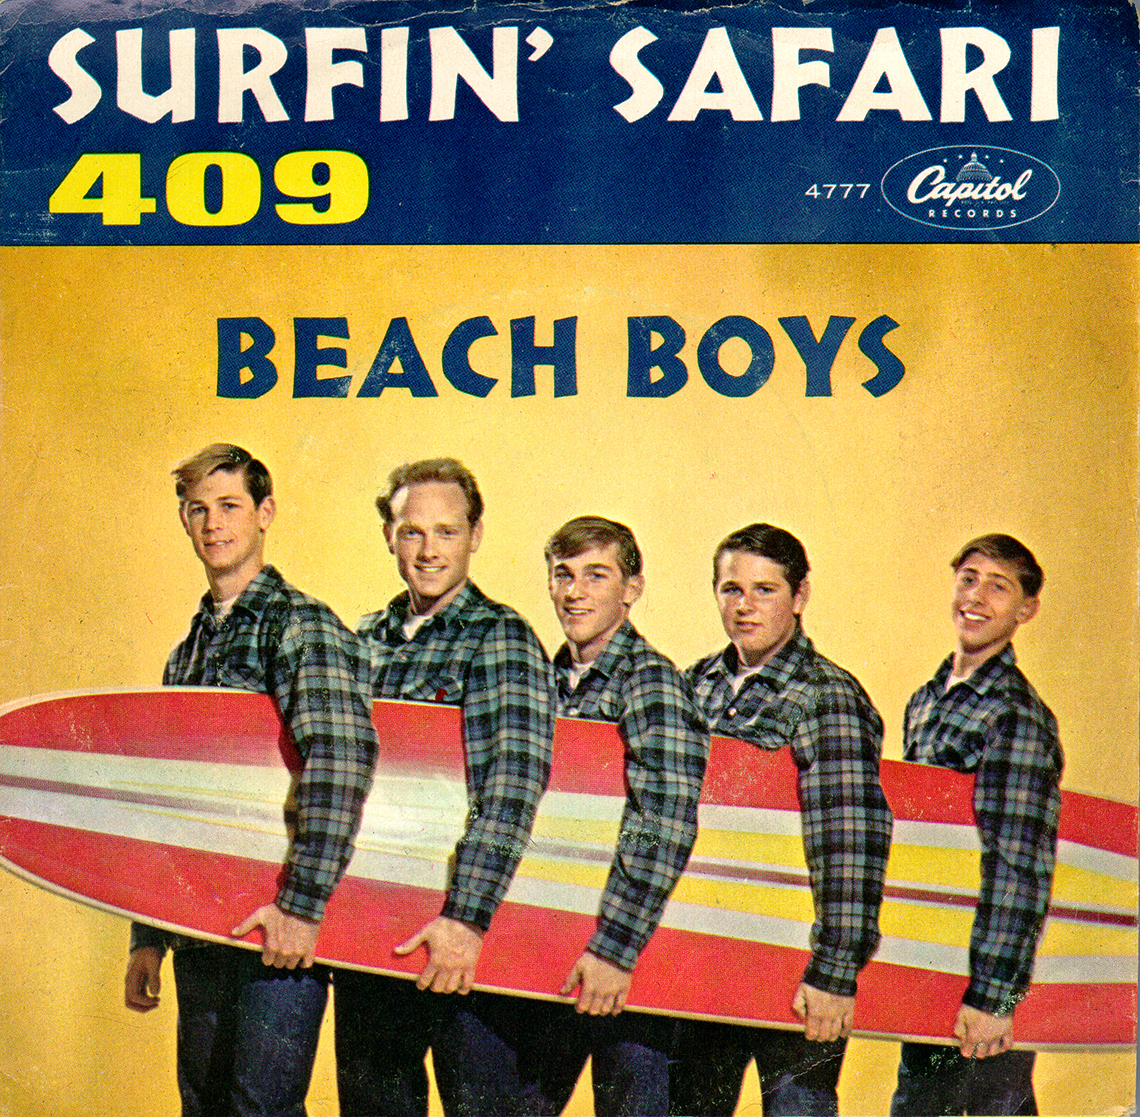 The album cover for The Beach Boys Surfin Safari record